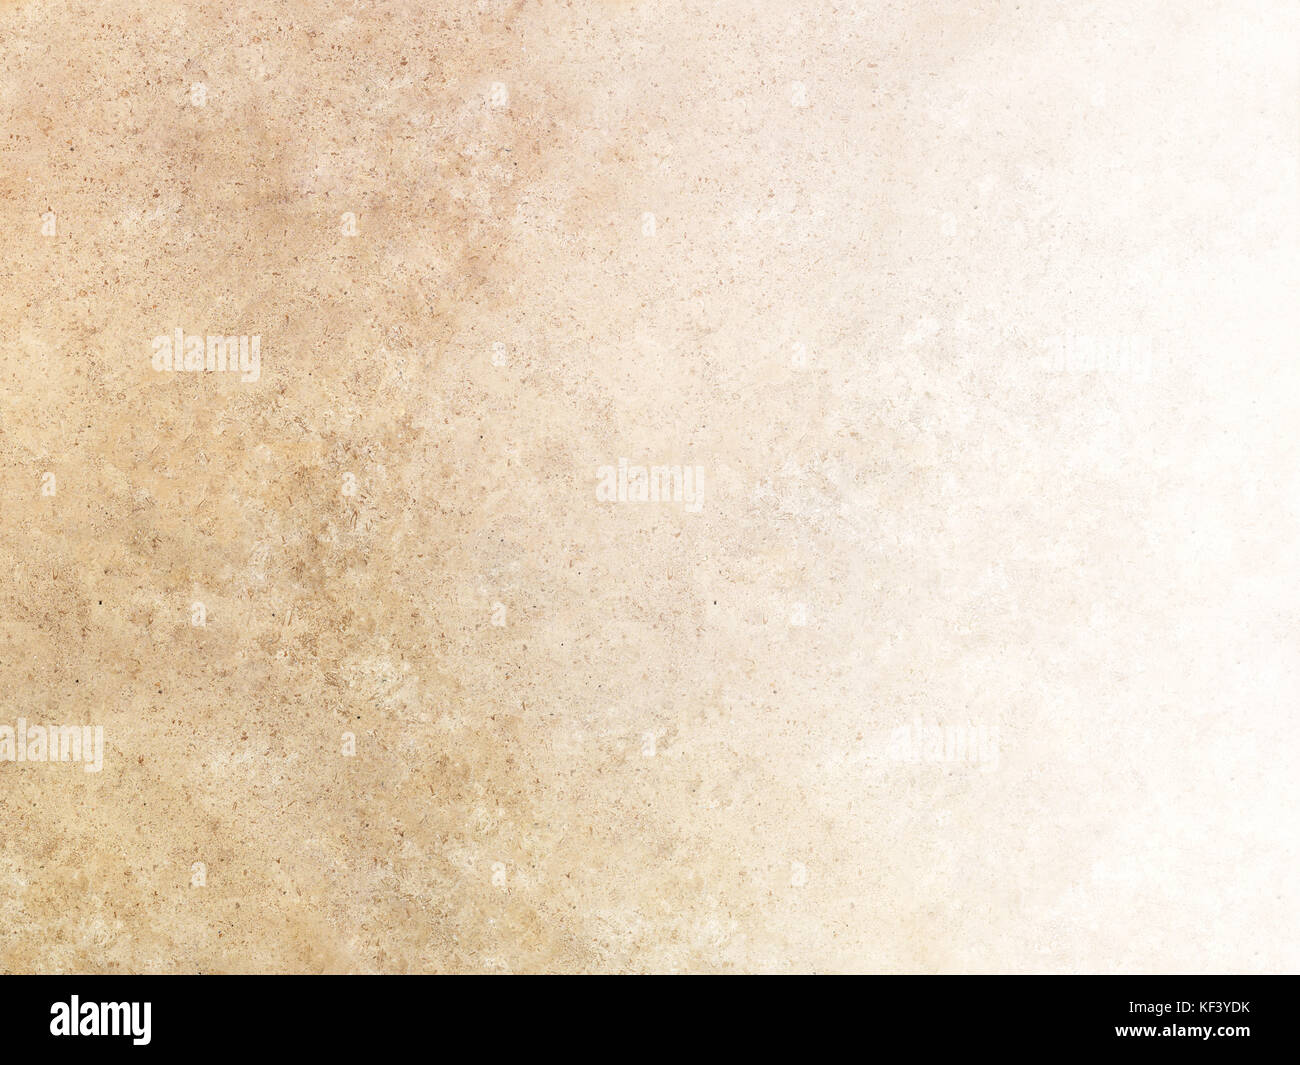 Tan beige marmo travertino texture di superficie con gradazione Foto Stock